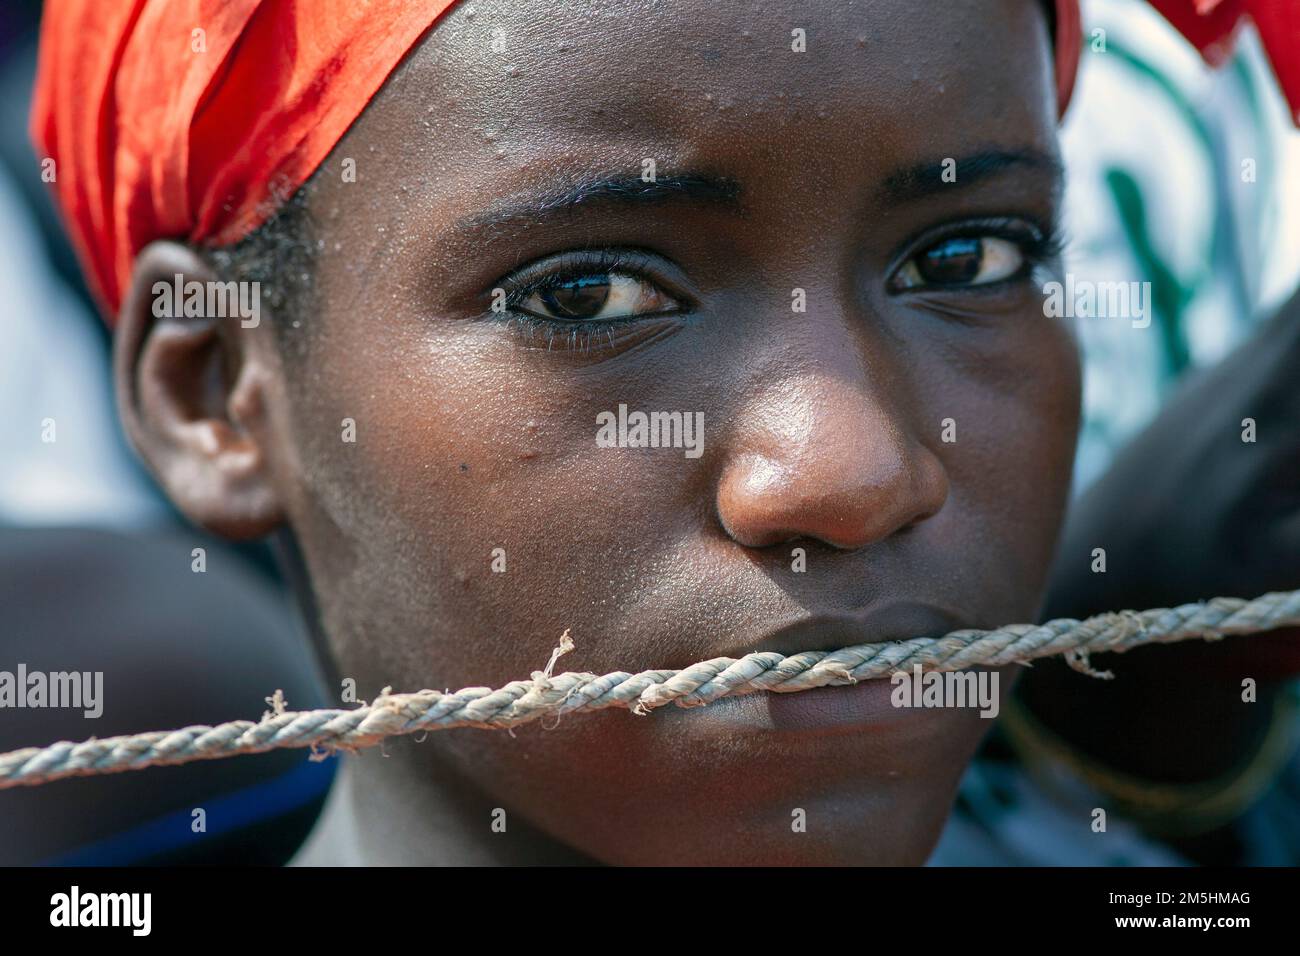 Nahaufnahme eines jungen Mädchens mit einem Seil über seinem Mund, das zum Schweigen gebracht wird Stockfoto